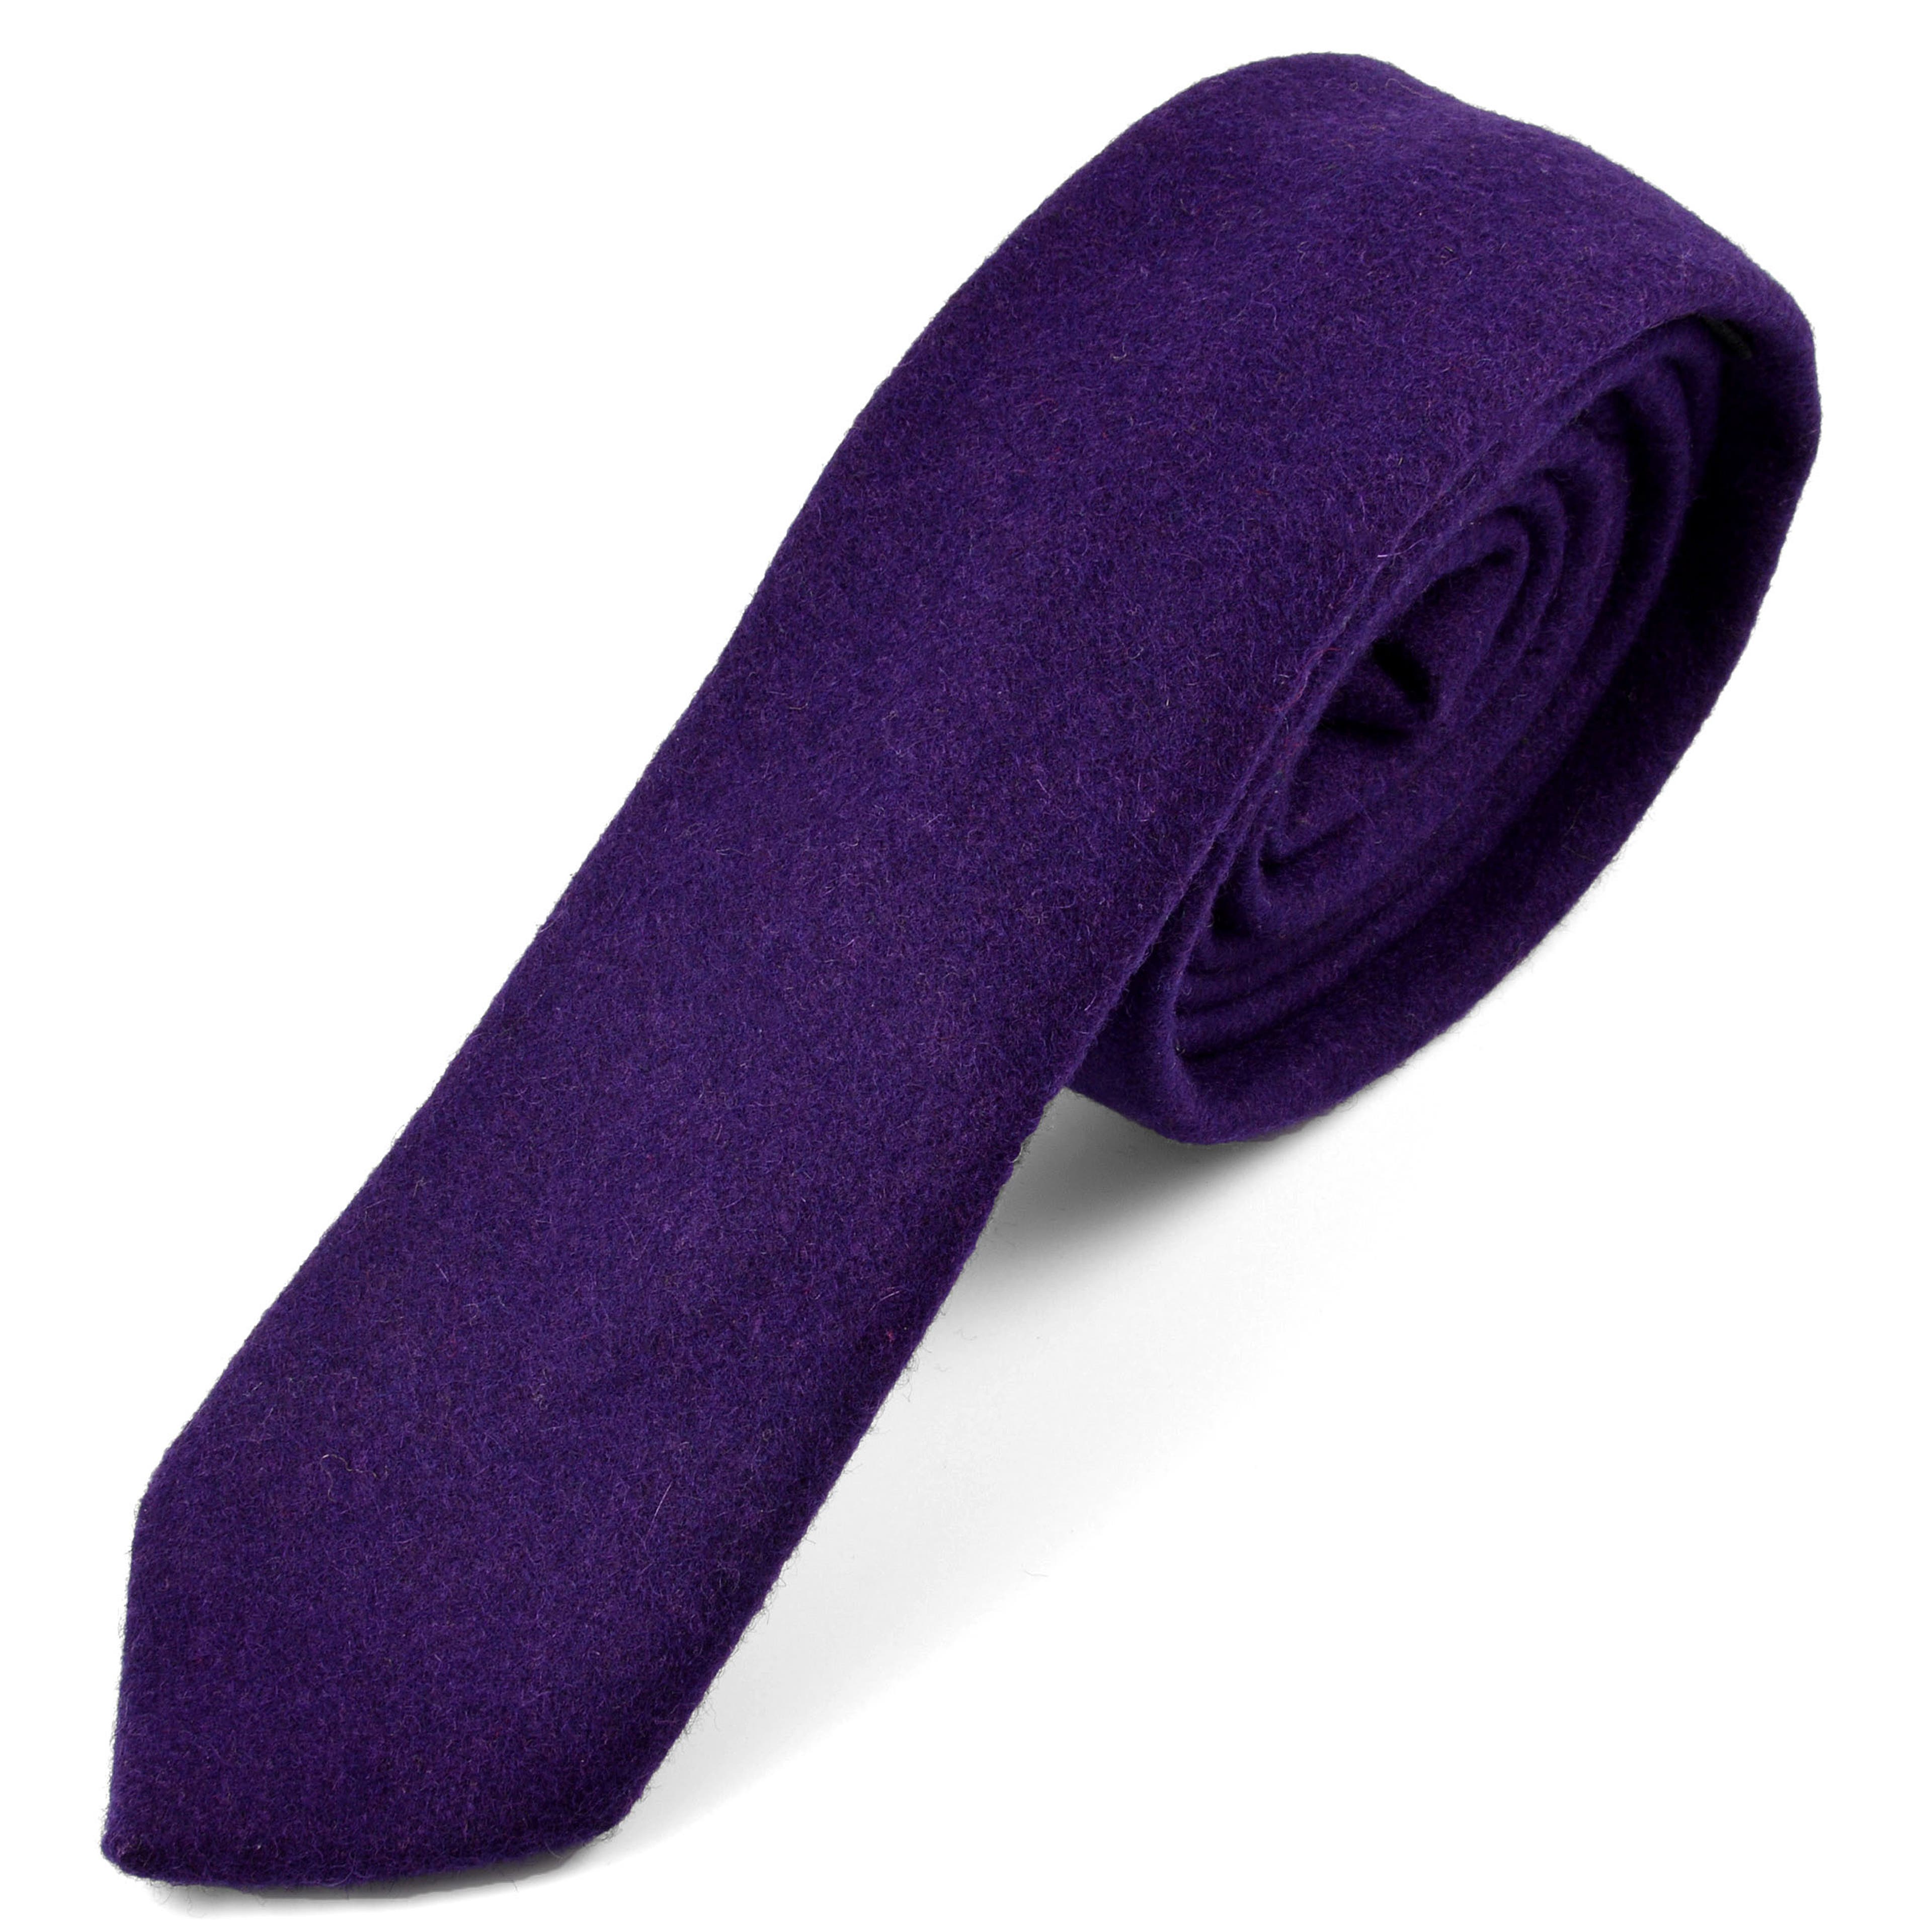 Corbata natural hecha a mano en púrpura 